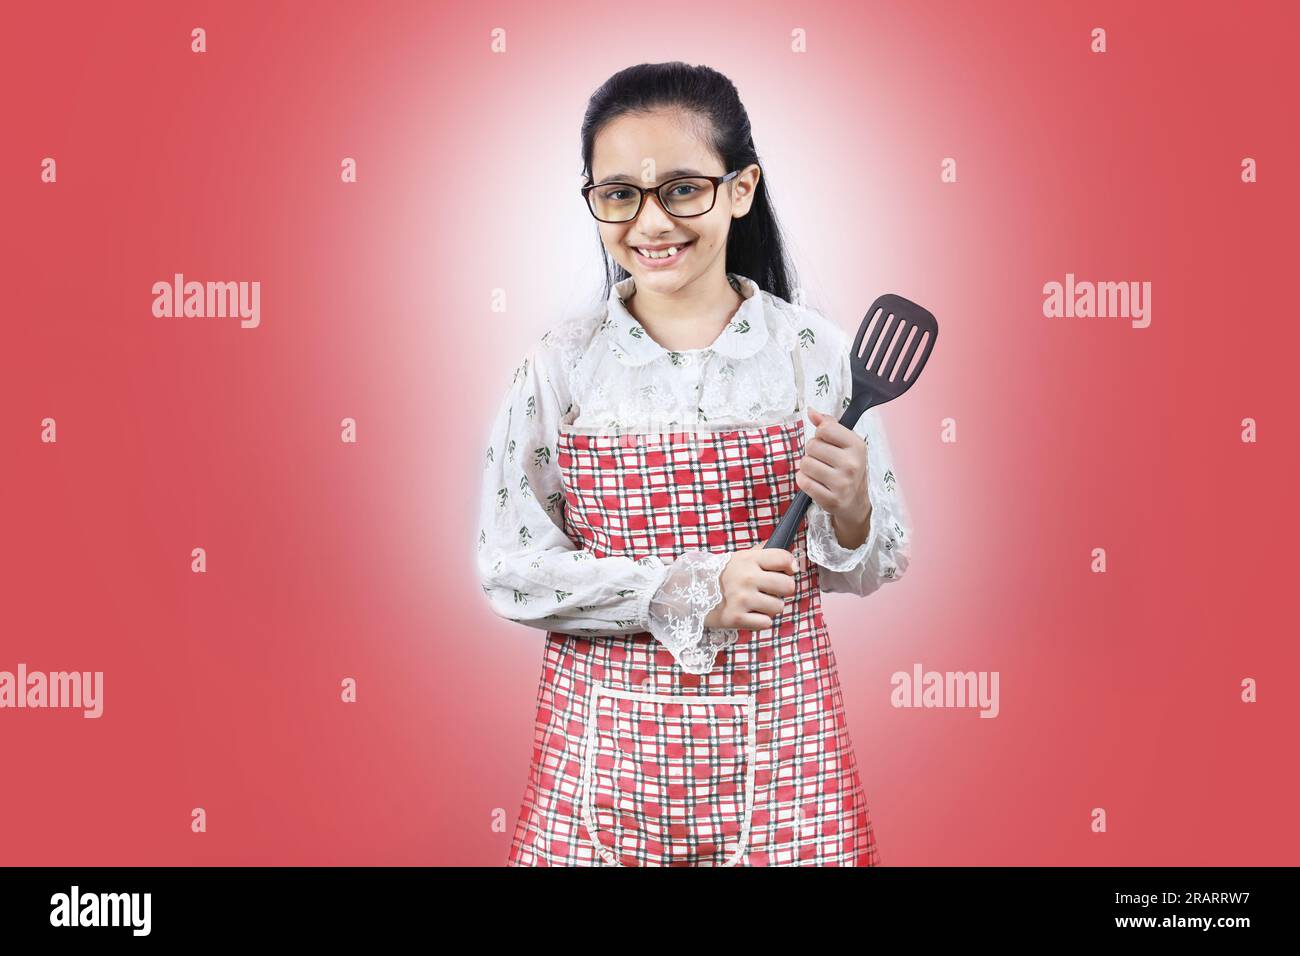 Portrait d'une adolescente indienne heureuse dans la cuisine tenant des accessoires de cuisine. Rolling Rin, cuillère à frire, louche, poêle à frire. Joyeux et joyeux jeune Banque D'Images